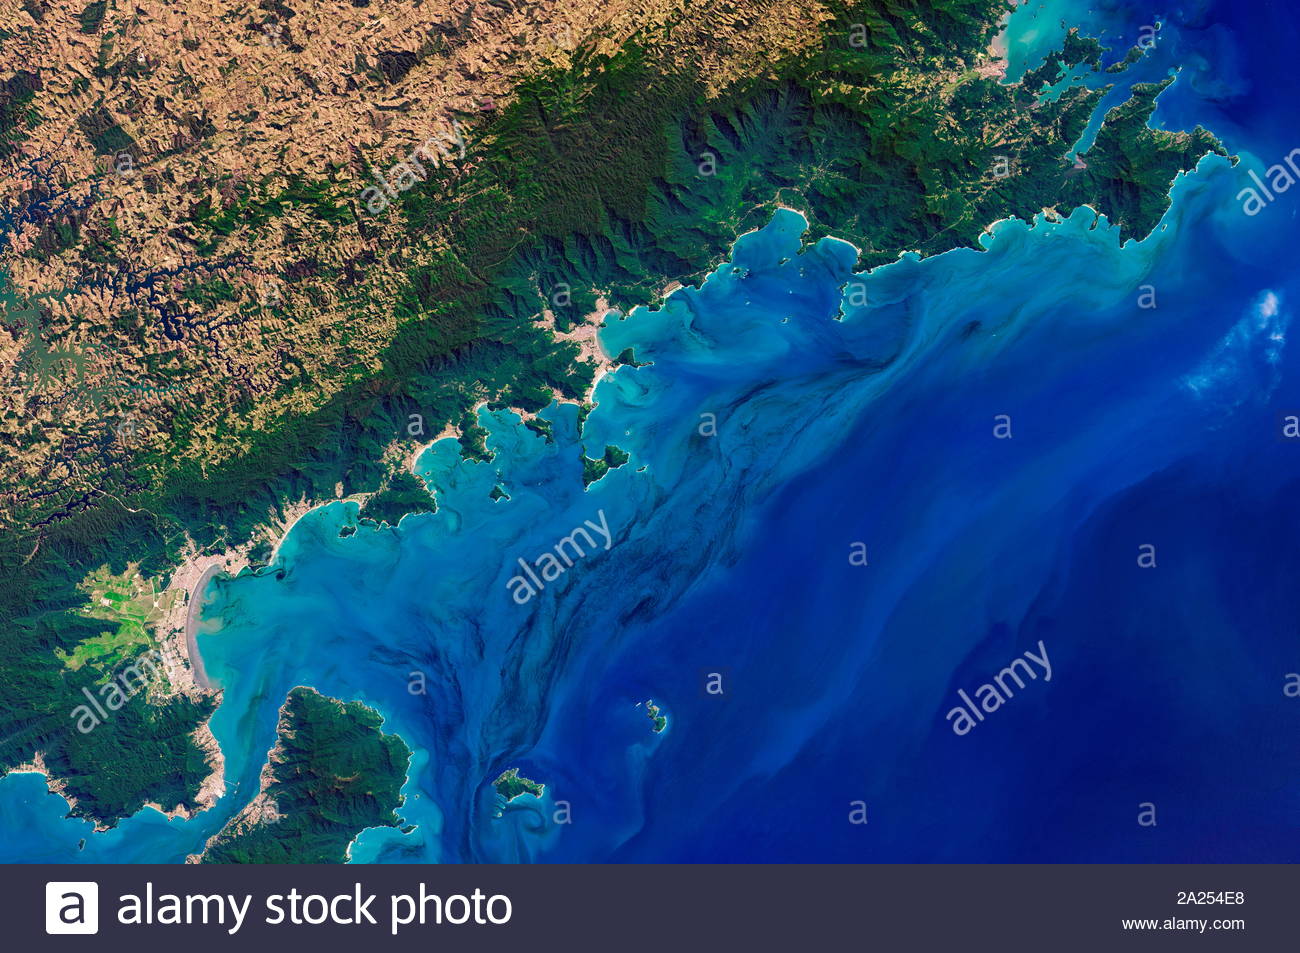 Phytoplankton bloom wirbelnden in den Gewässern vor der Küste des brasilianischen Bundesstaates São Paulo. Das operationelle Land Imager (OLI) auf der Landsat 8 Satelliten das Bild am 5. September 2017 aufgenommen. Die Arten so wahrscheinlich, Gymnodinium aureolum werden identifiziert. Stockfoto